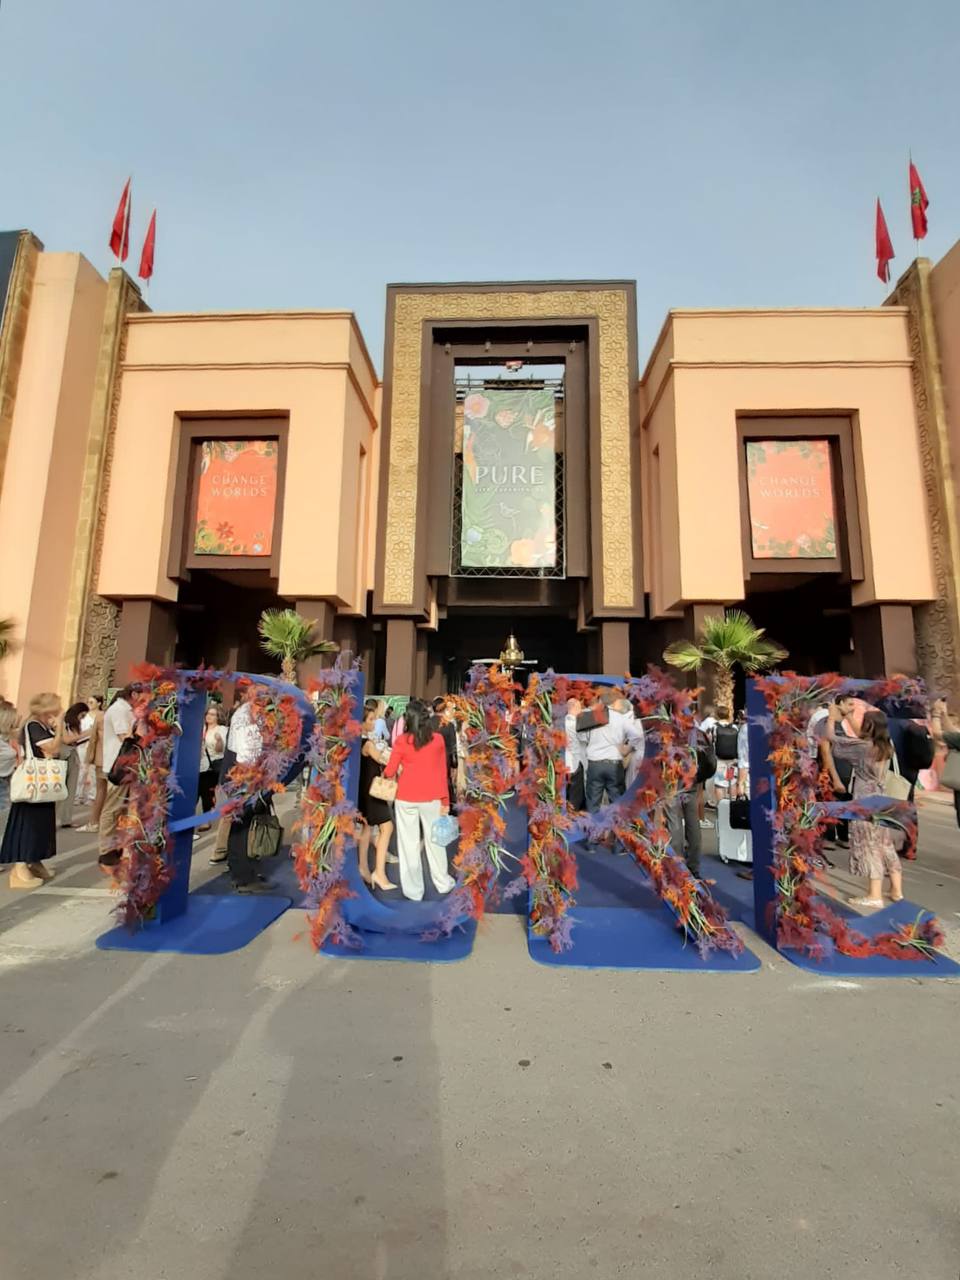 Galleria Turismo di alta gamma, Puglia protagonista al “Pure Life Experiences” di Marrakech, evento internazionale tra i più prestigiosi del settore - Diapositiva 4 di 16